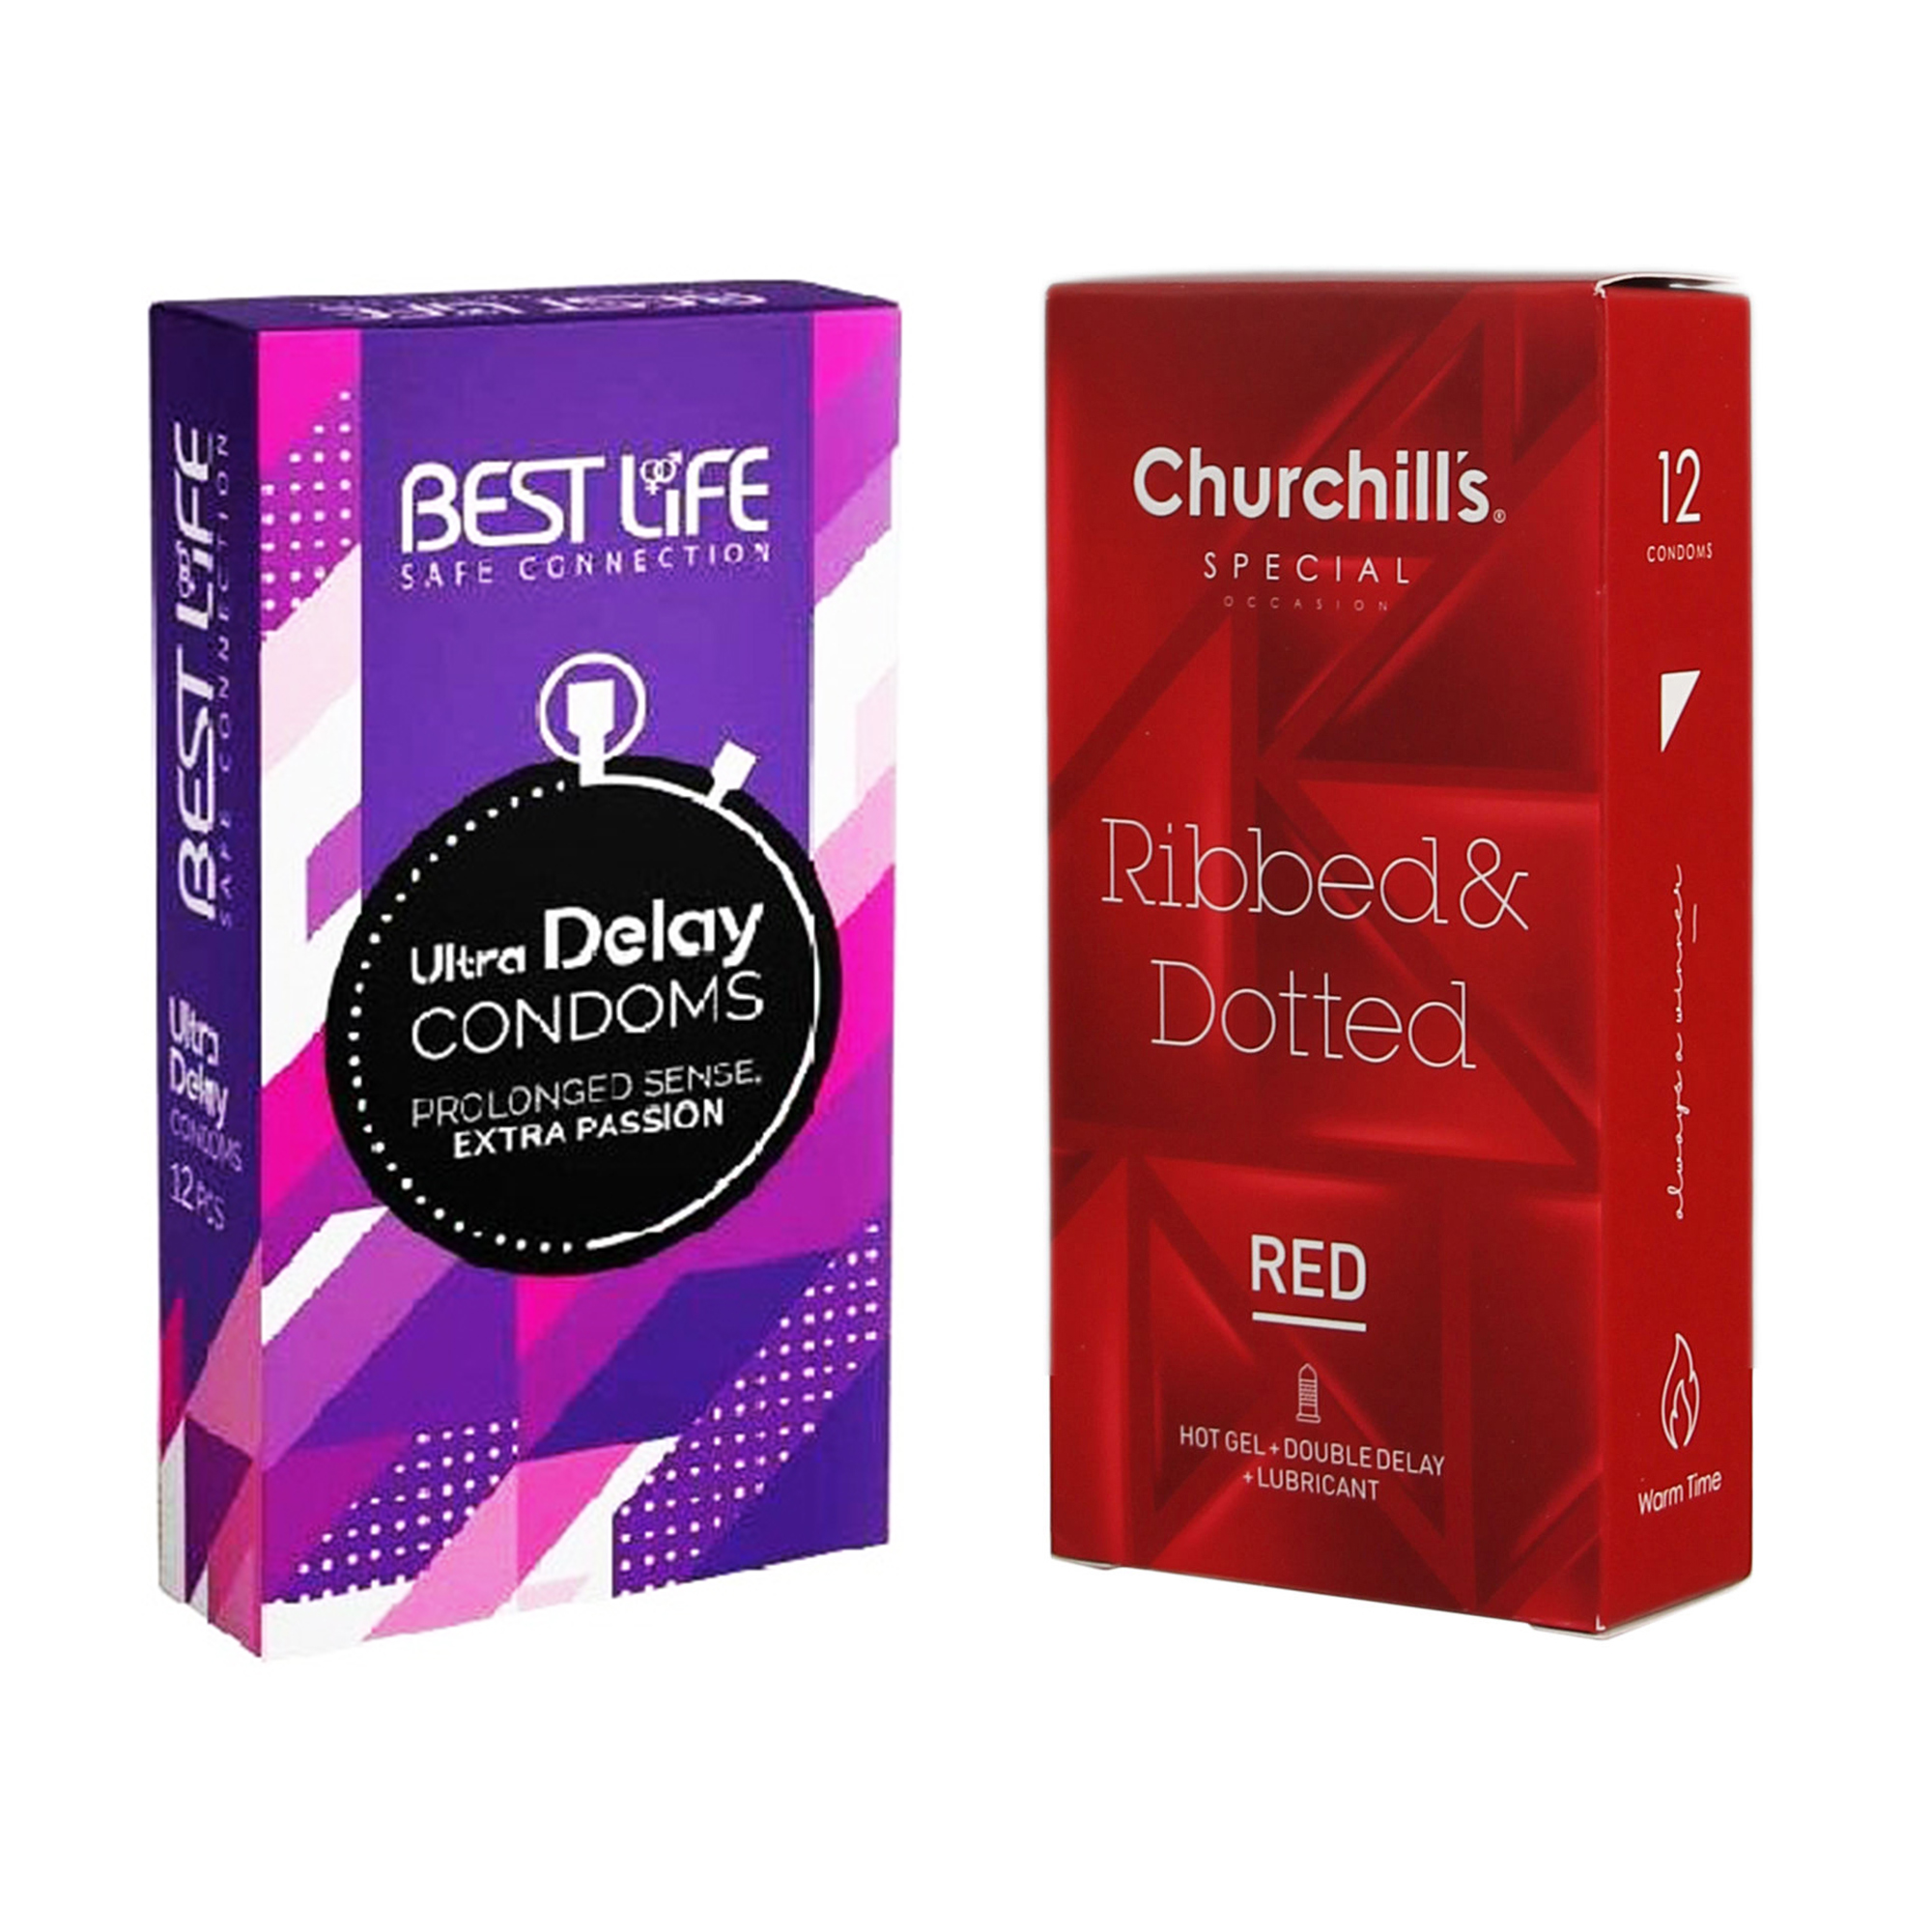 کاندوم چرچیلز مدل Ribbed & Dotted Red بسته 12 عددی به همراه کاندوم بست لایف مدل Ultra Delay بسته 12 عددی